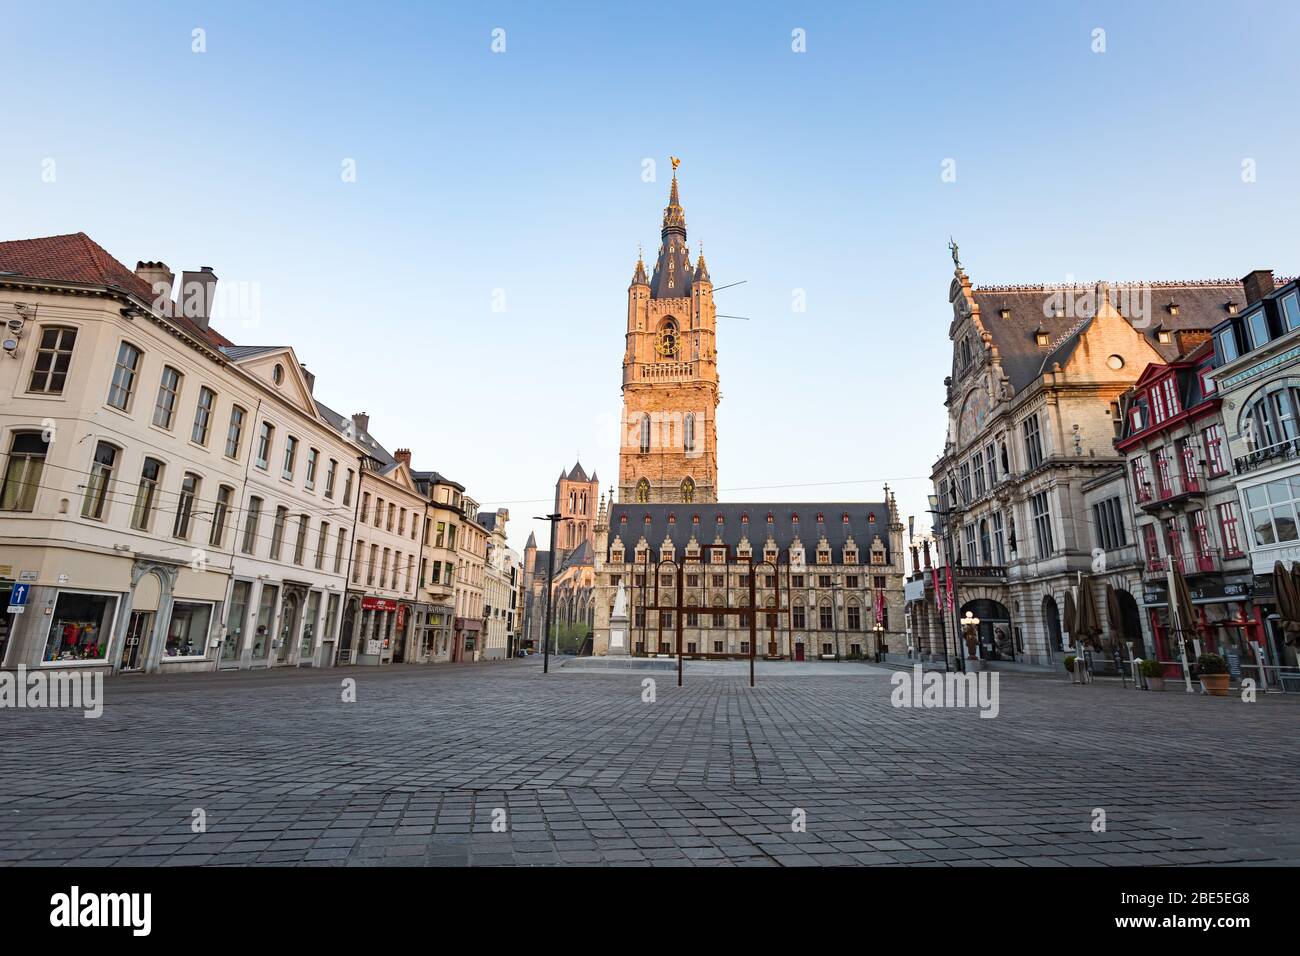 Ghent, Belgium - April 9, 2020: The 91 meter tall Belfry of Ghent. the tallest belfry in Belgium. Stock Photo